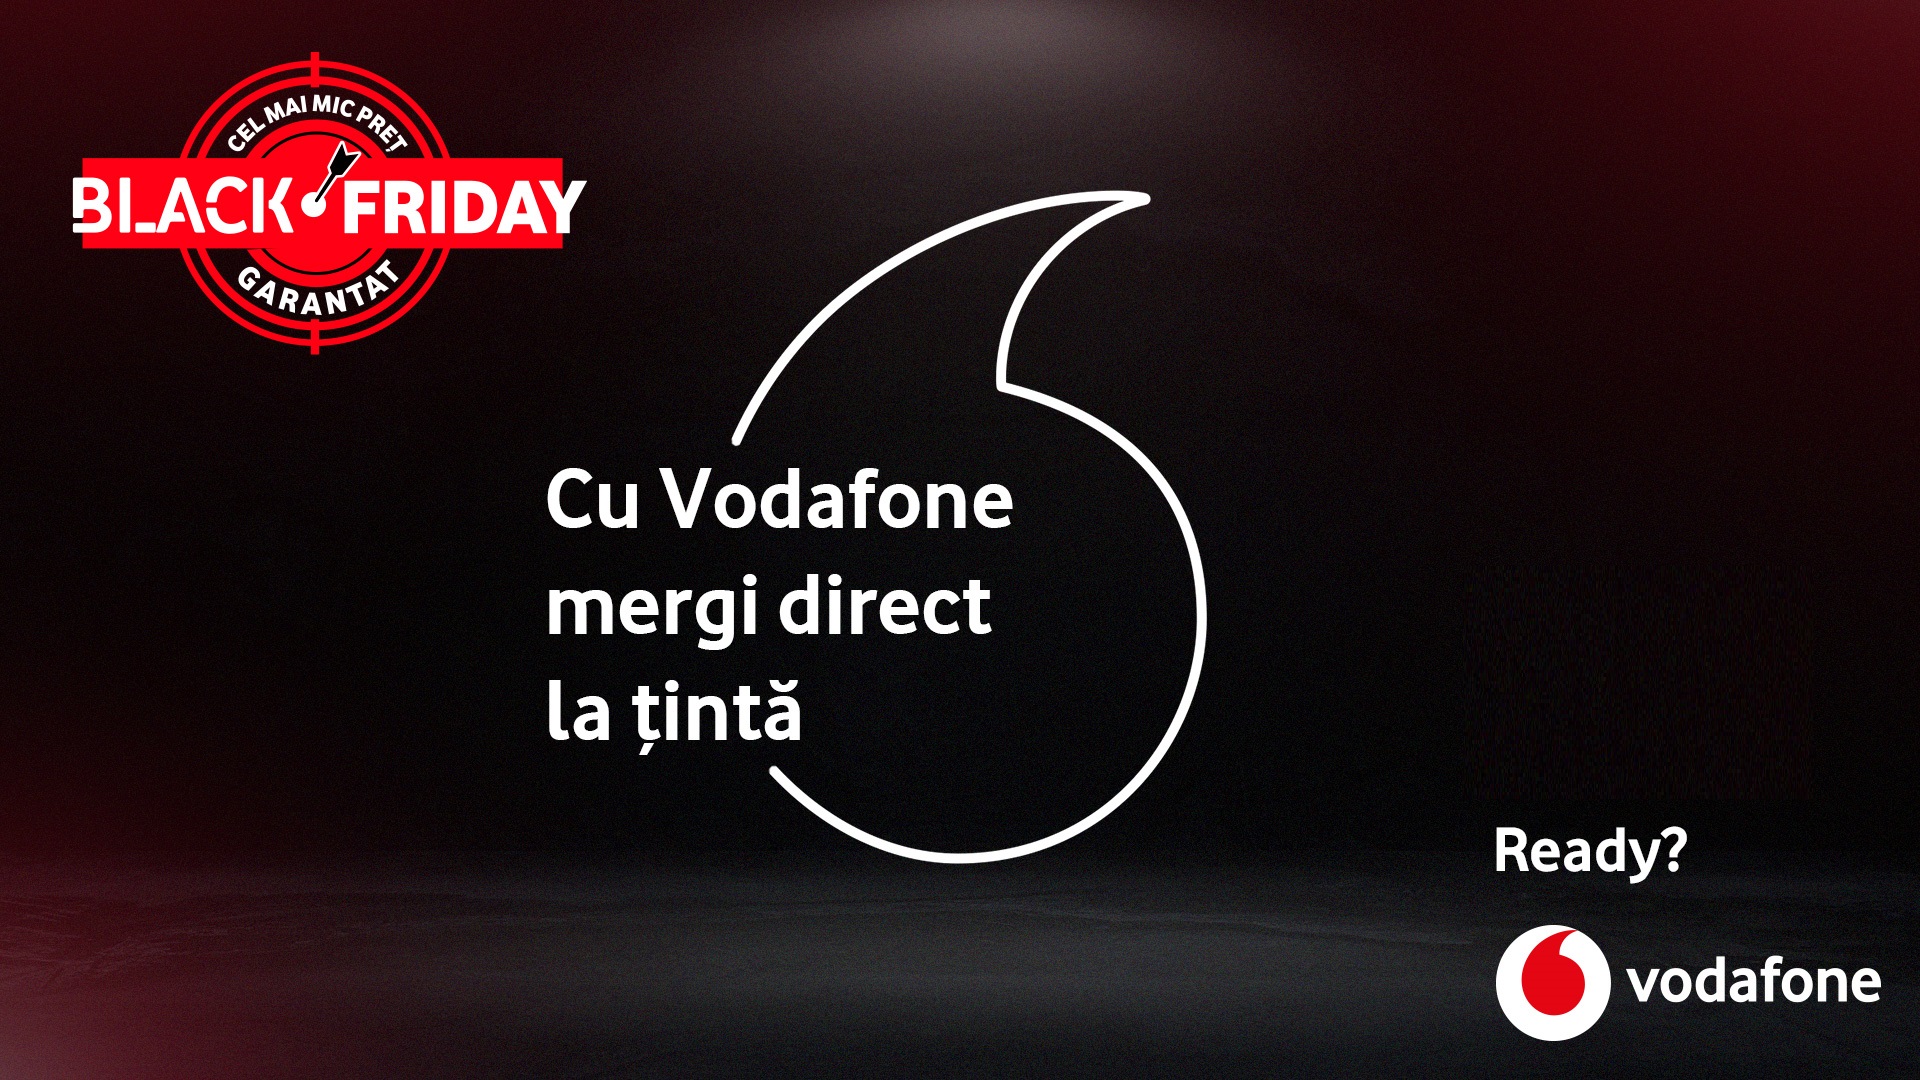 De Black Friday, cu Vodafone mergi direct la țintă